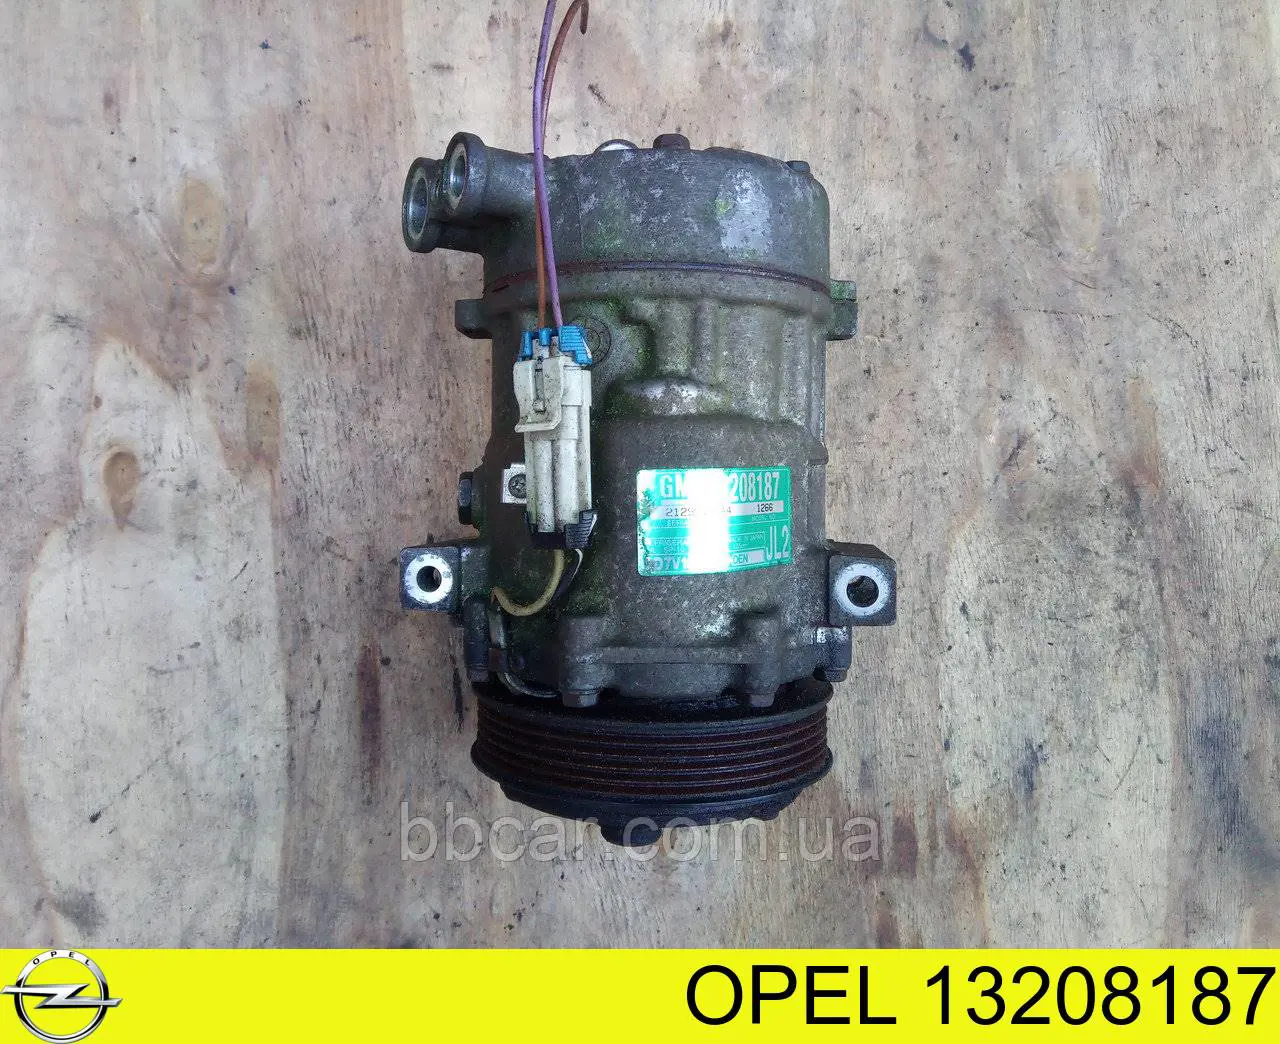 13208187 Opel compressor de aparelho de ar condicionado